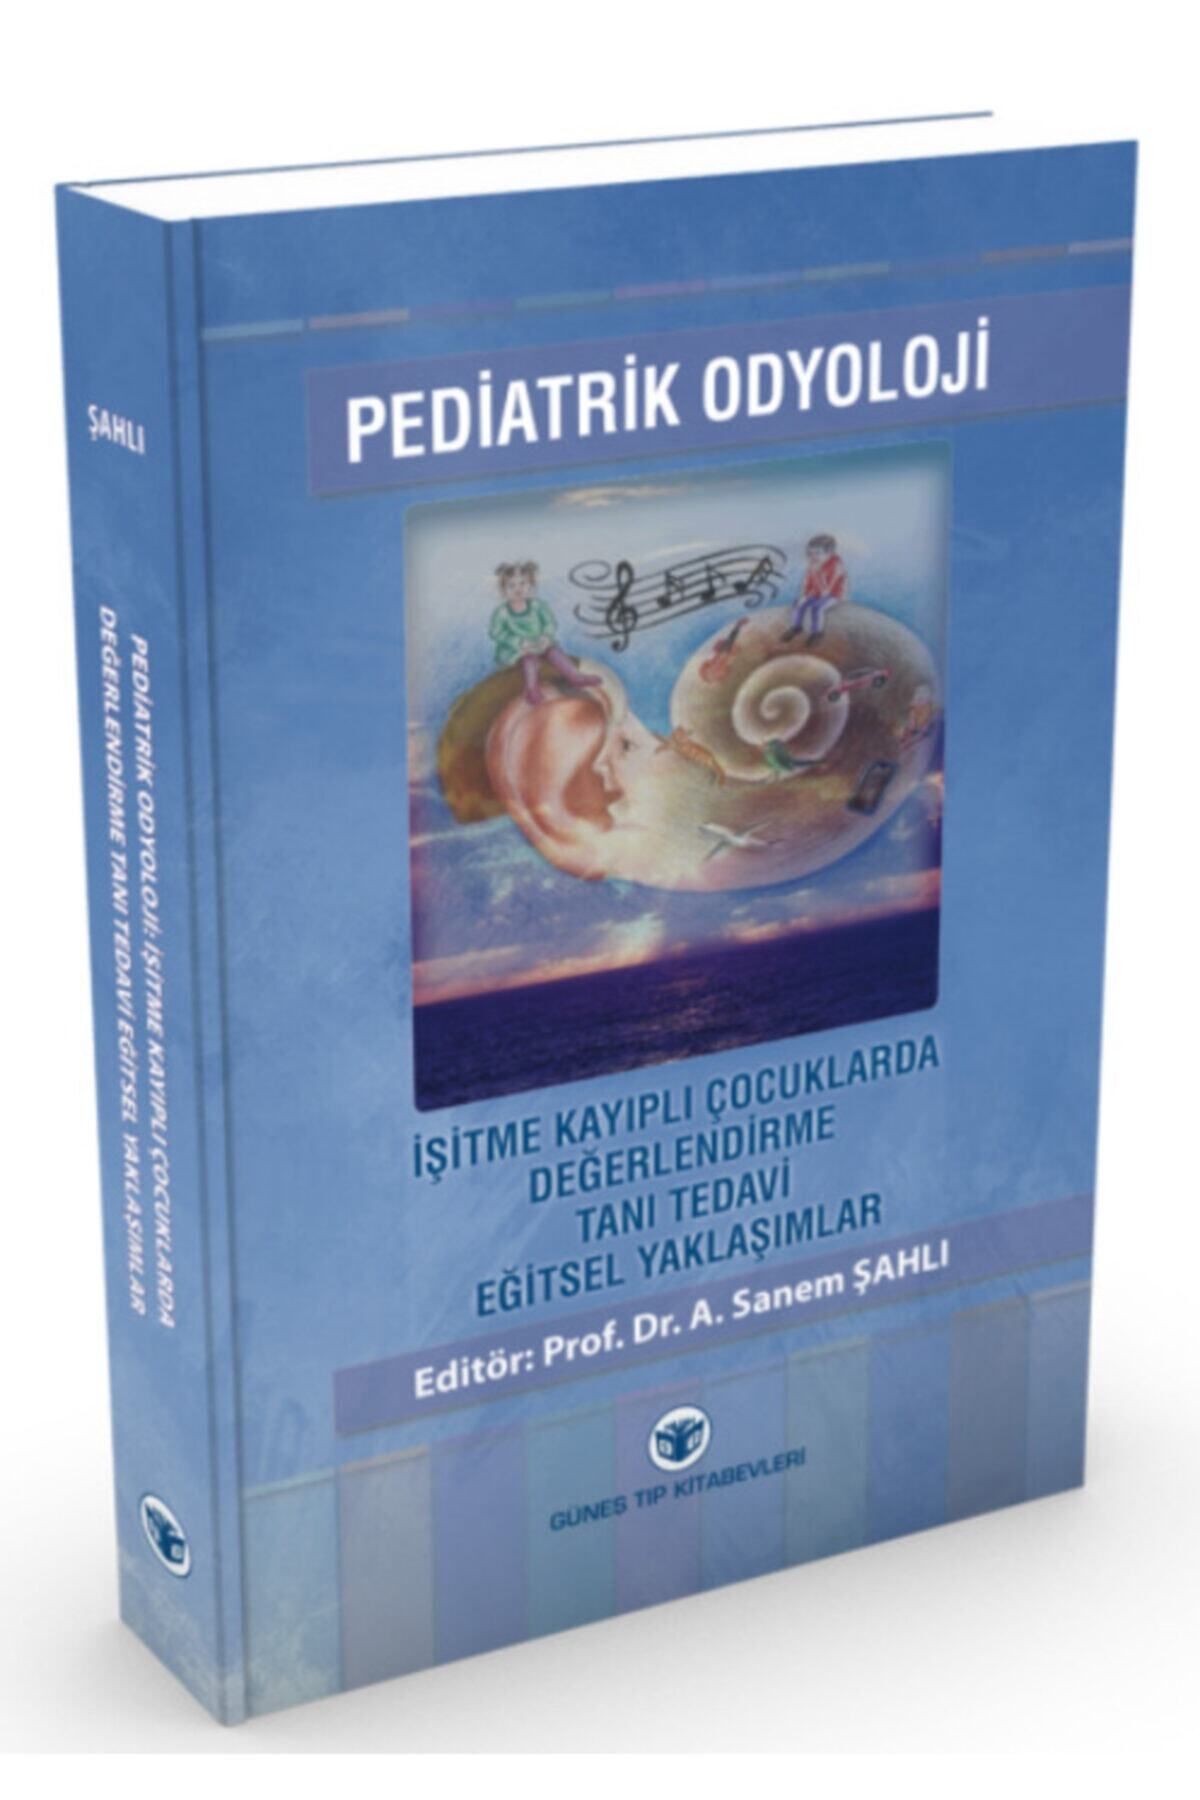 Güneş Tıp Kitabevleri Pediatrik Odyoloji- A. Sanem Şahlı